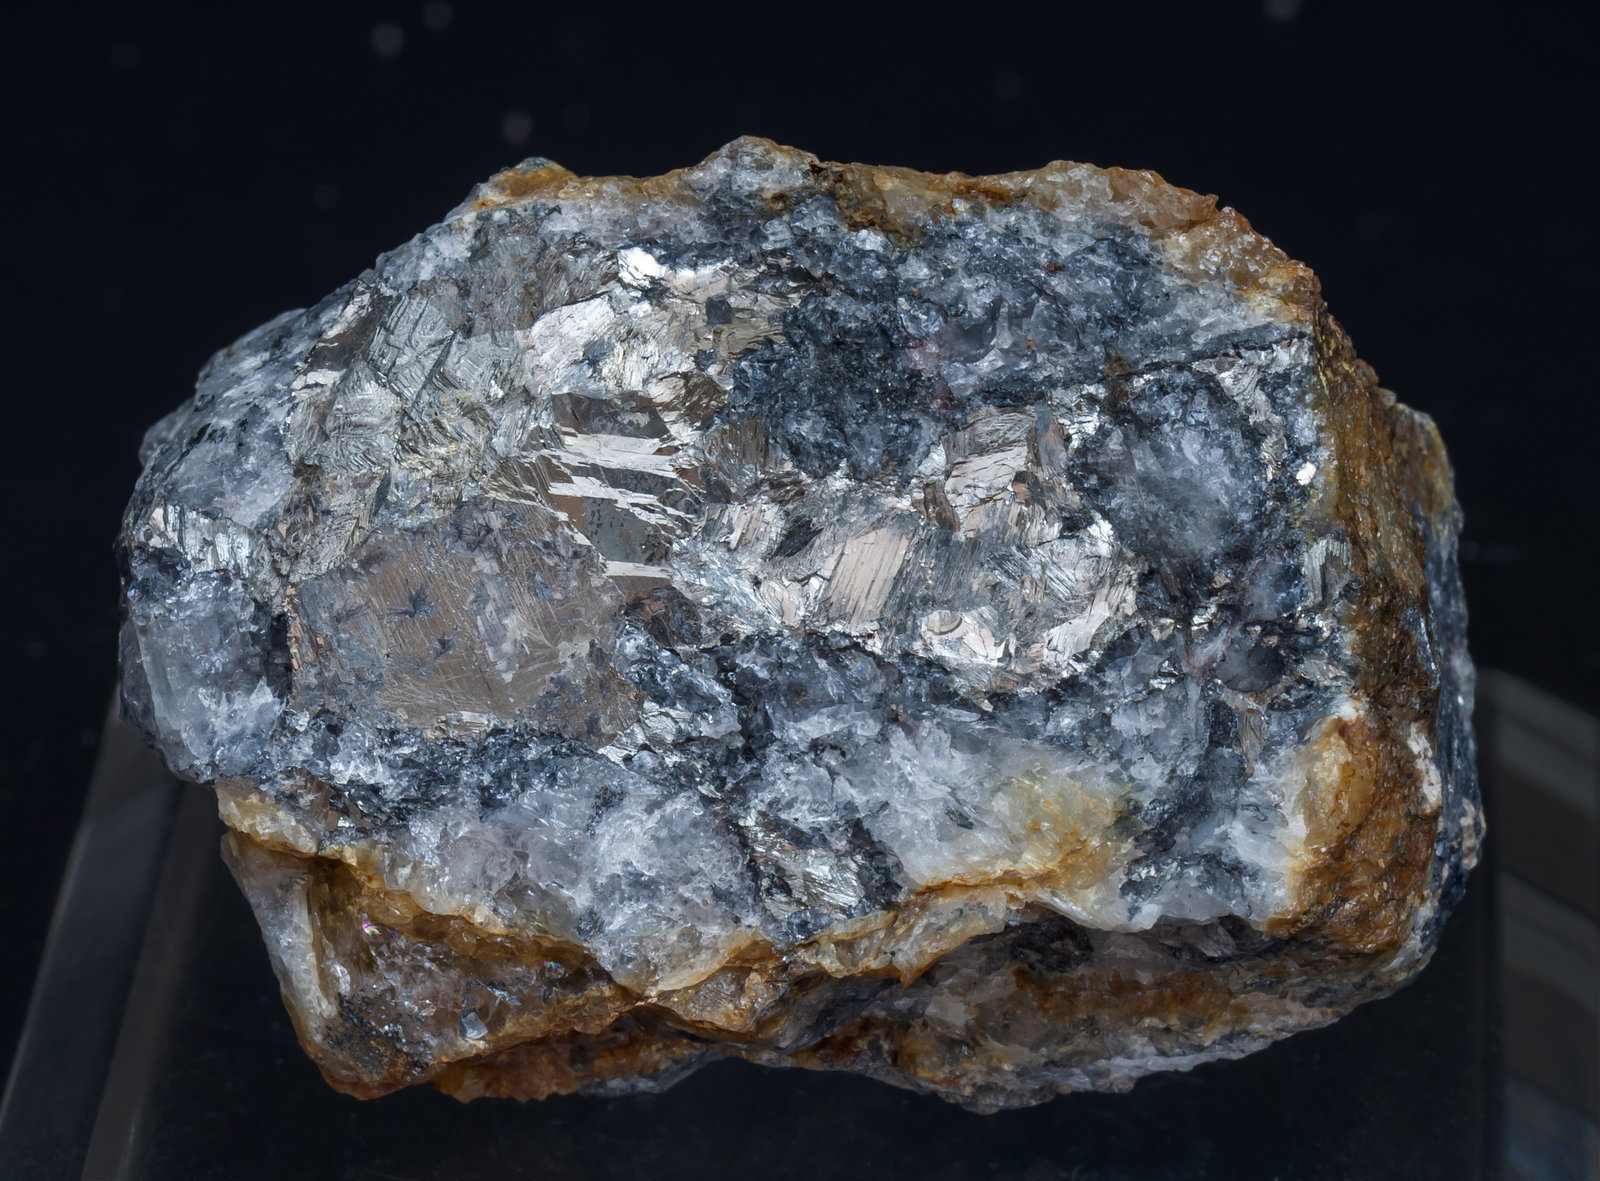 specimens/s_imagesAJ5/Antimony-NB86AJ5f.jpg